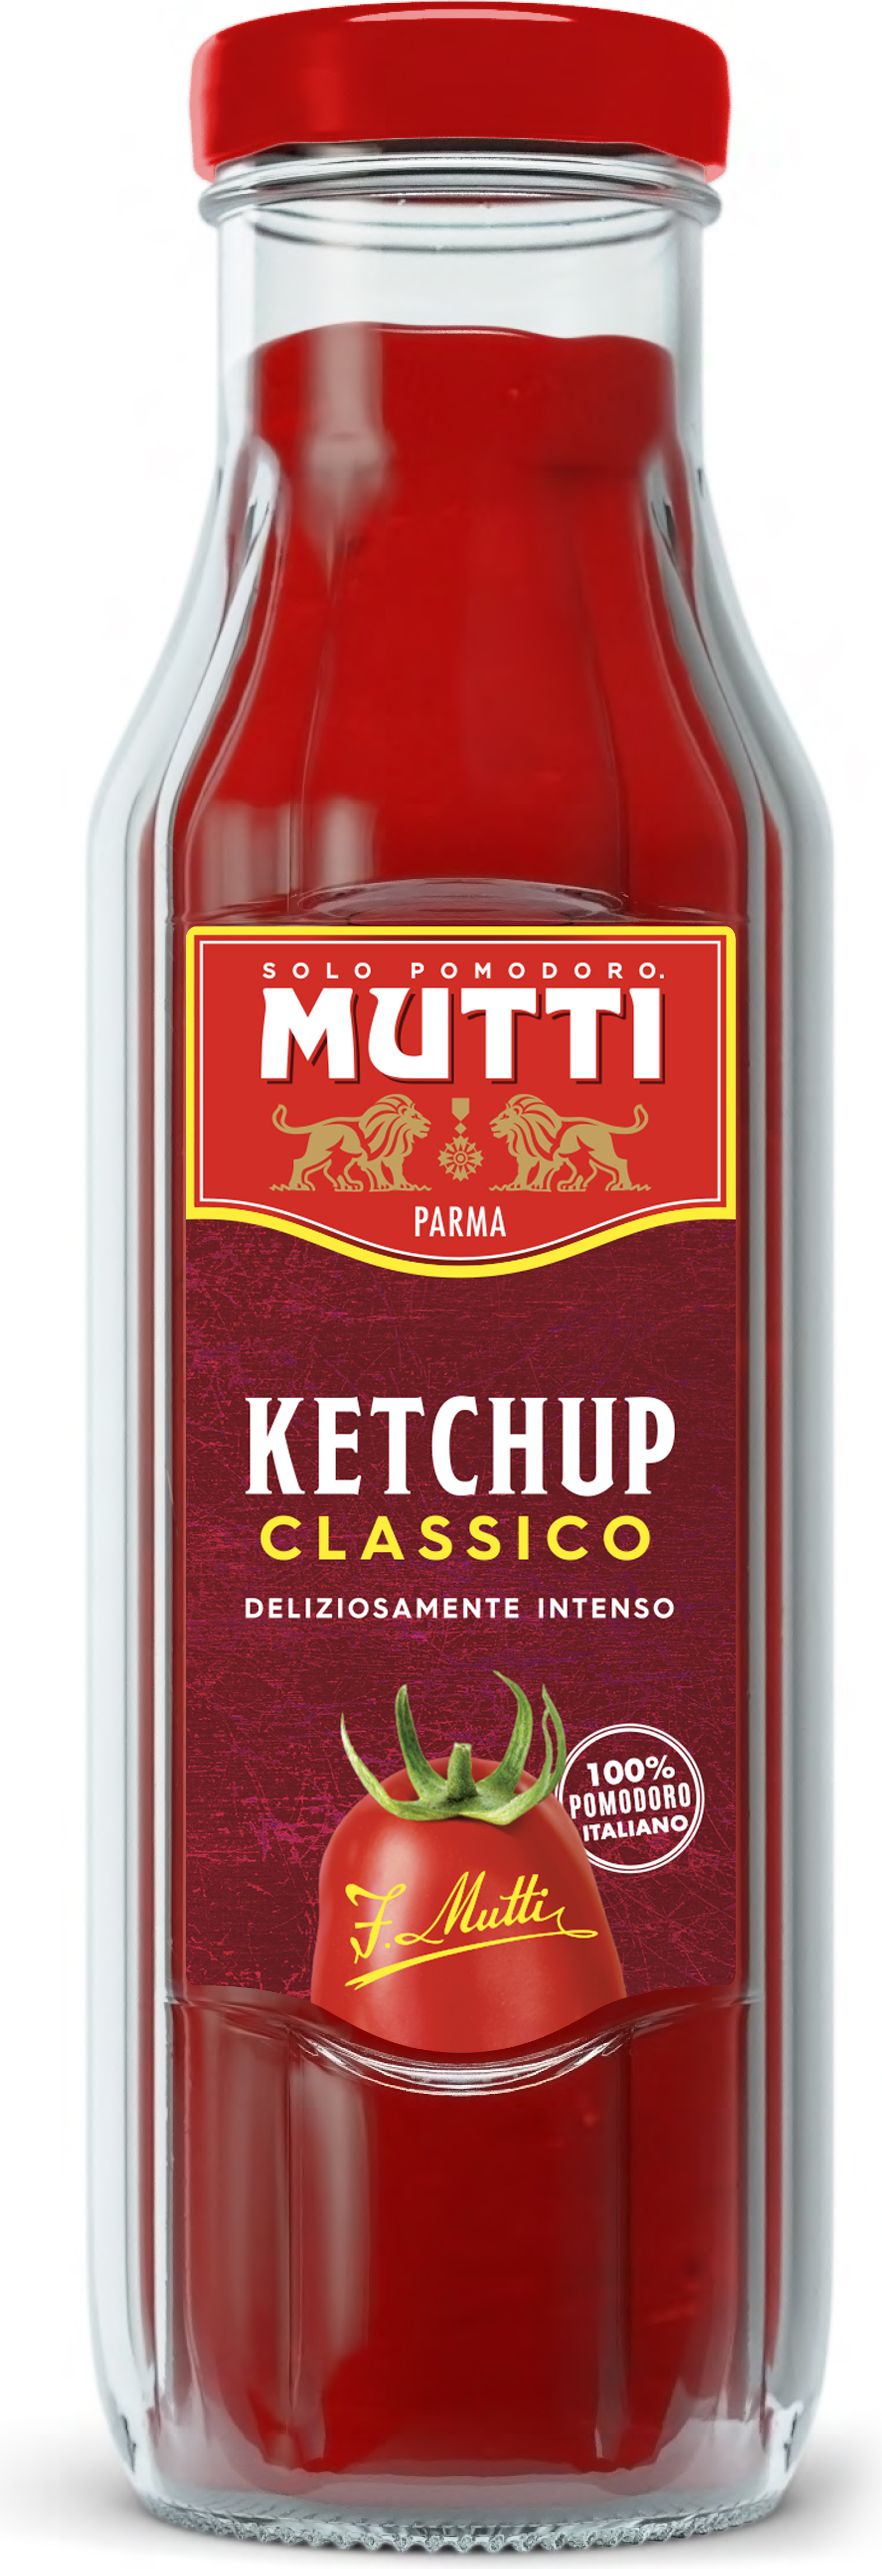 mutti томатный соус для пиццы ароматизированный фото 95